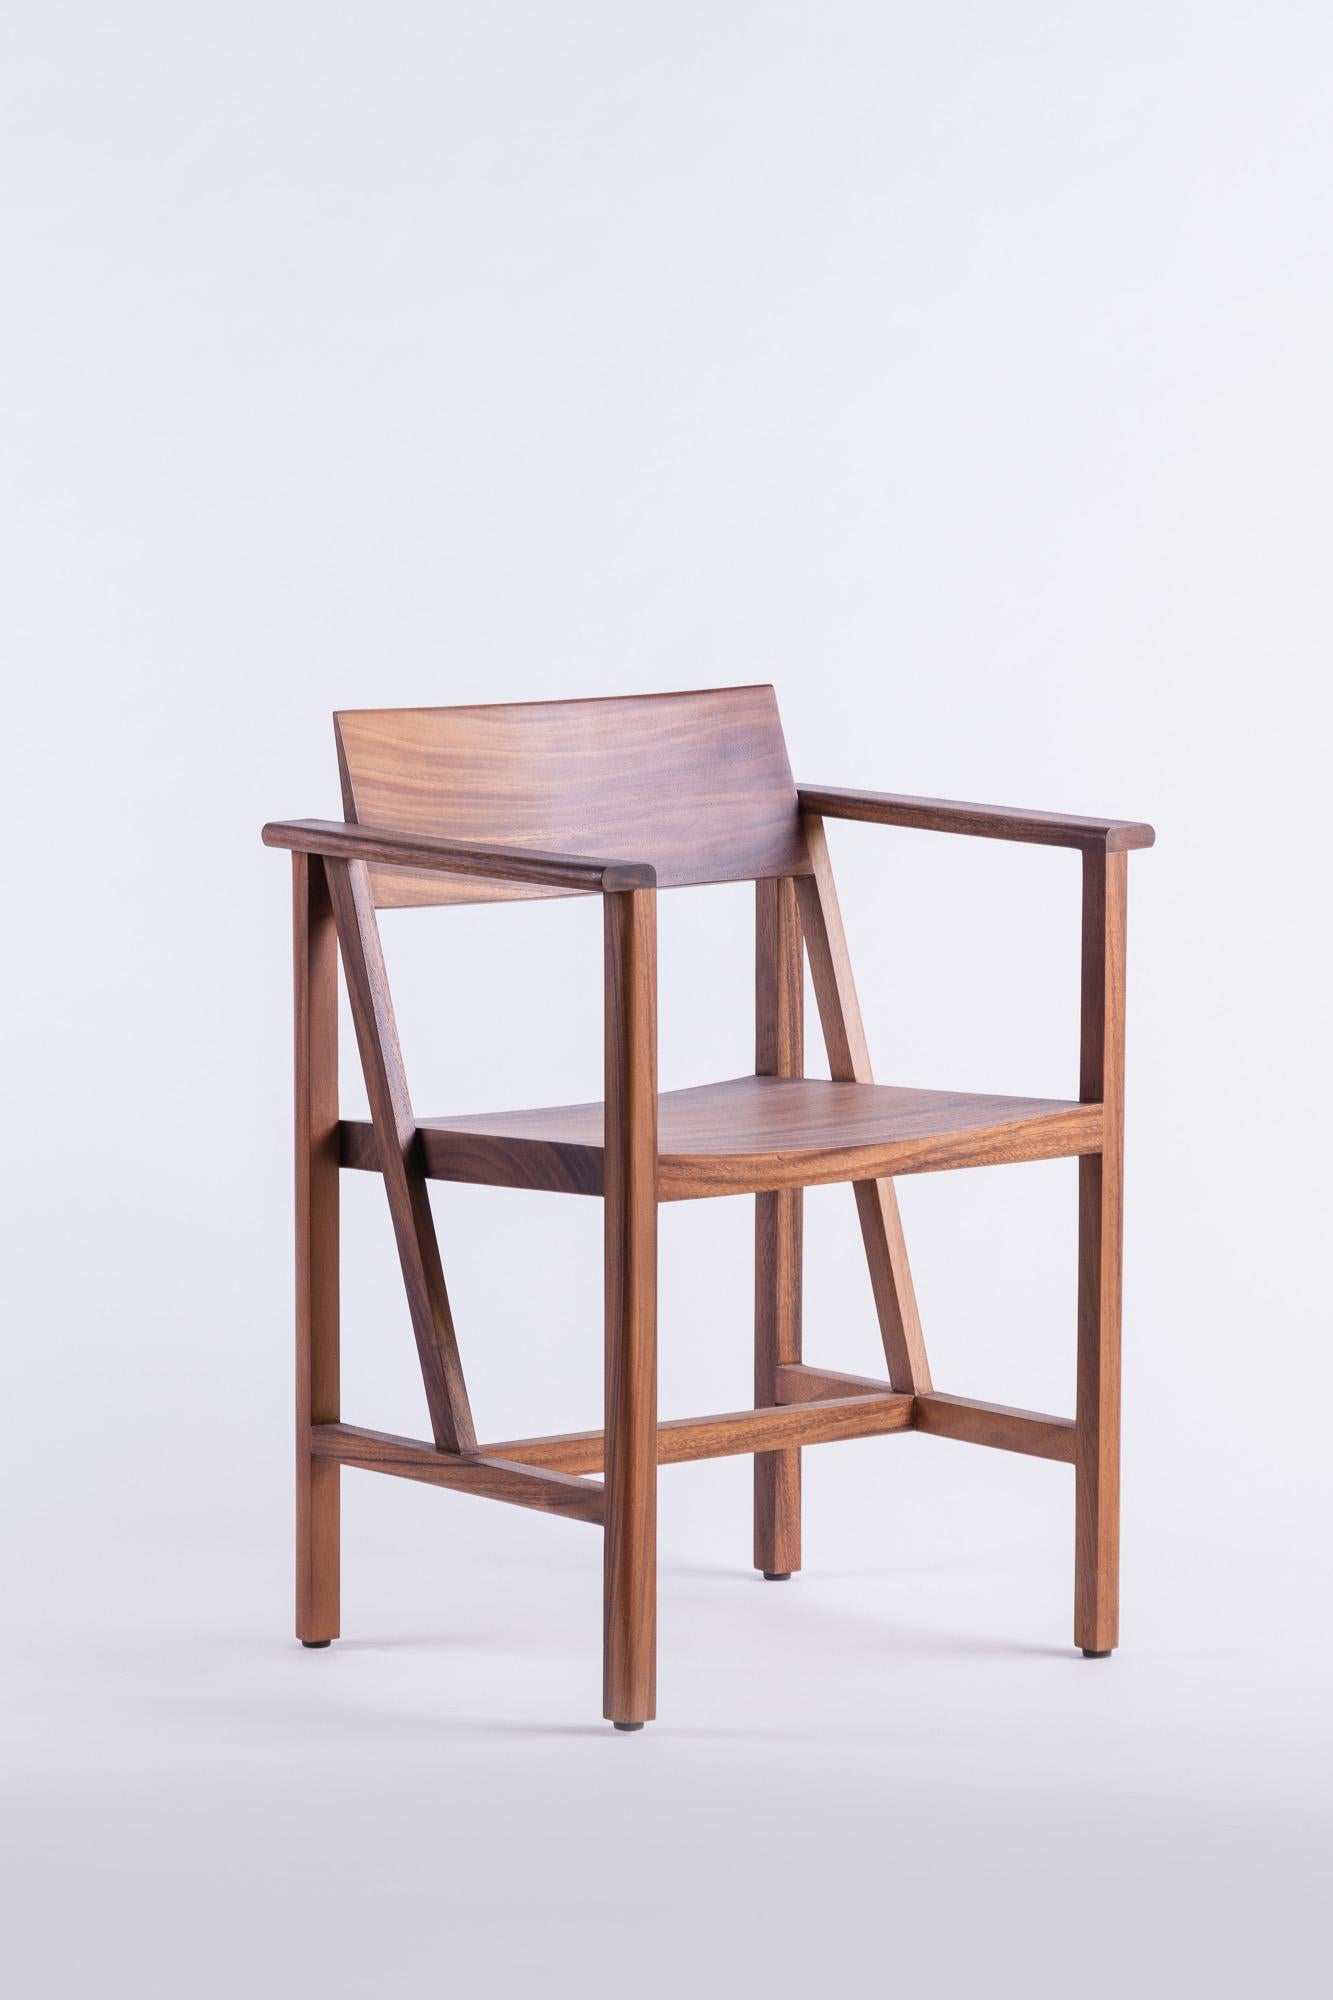 Der Phaka-Stuhl ist eine Suche nach der einfachsten Struktur, ein wesentliches Merkmal eines guten Stuhls. Die reine, schlichte Ästhetik wird durch außergewöhnliche Handwerkskunst erzeugt. Für optimale Proportionen sorgt das Design des Stuhls, das